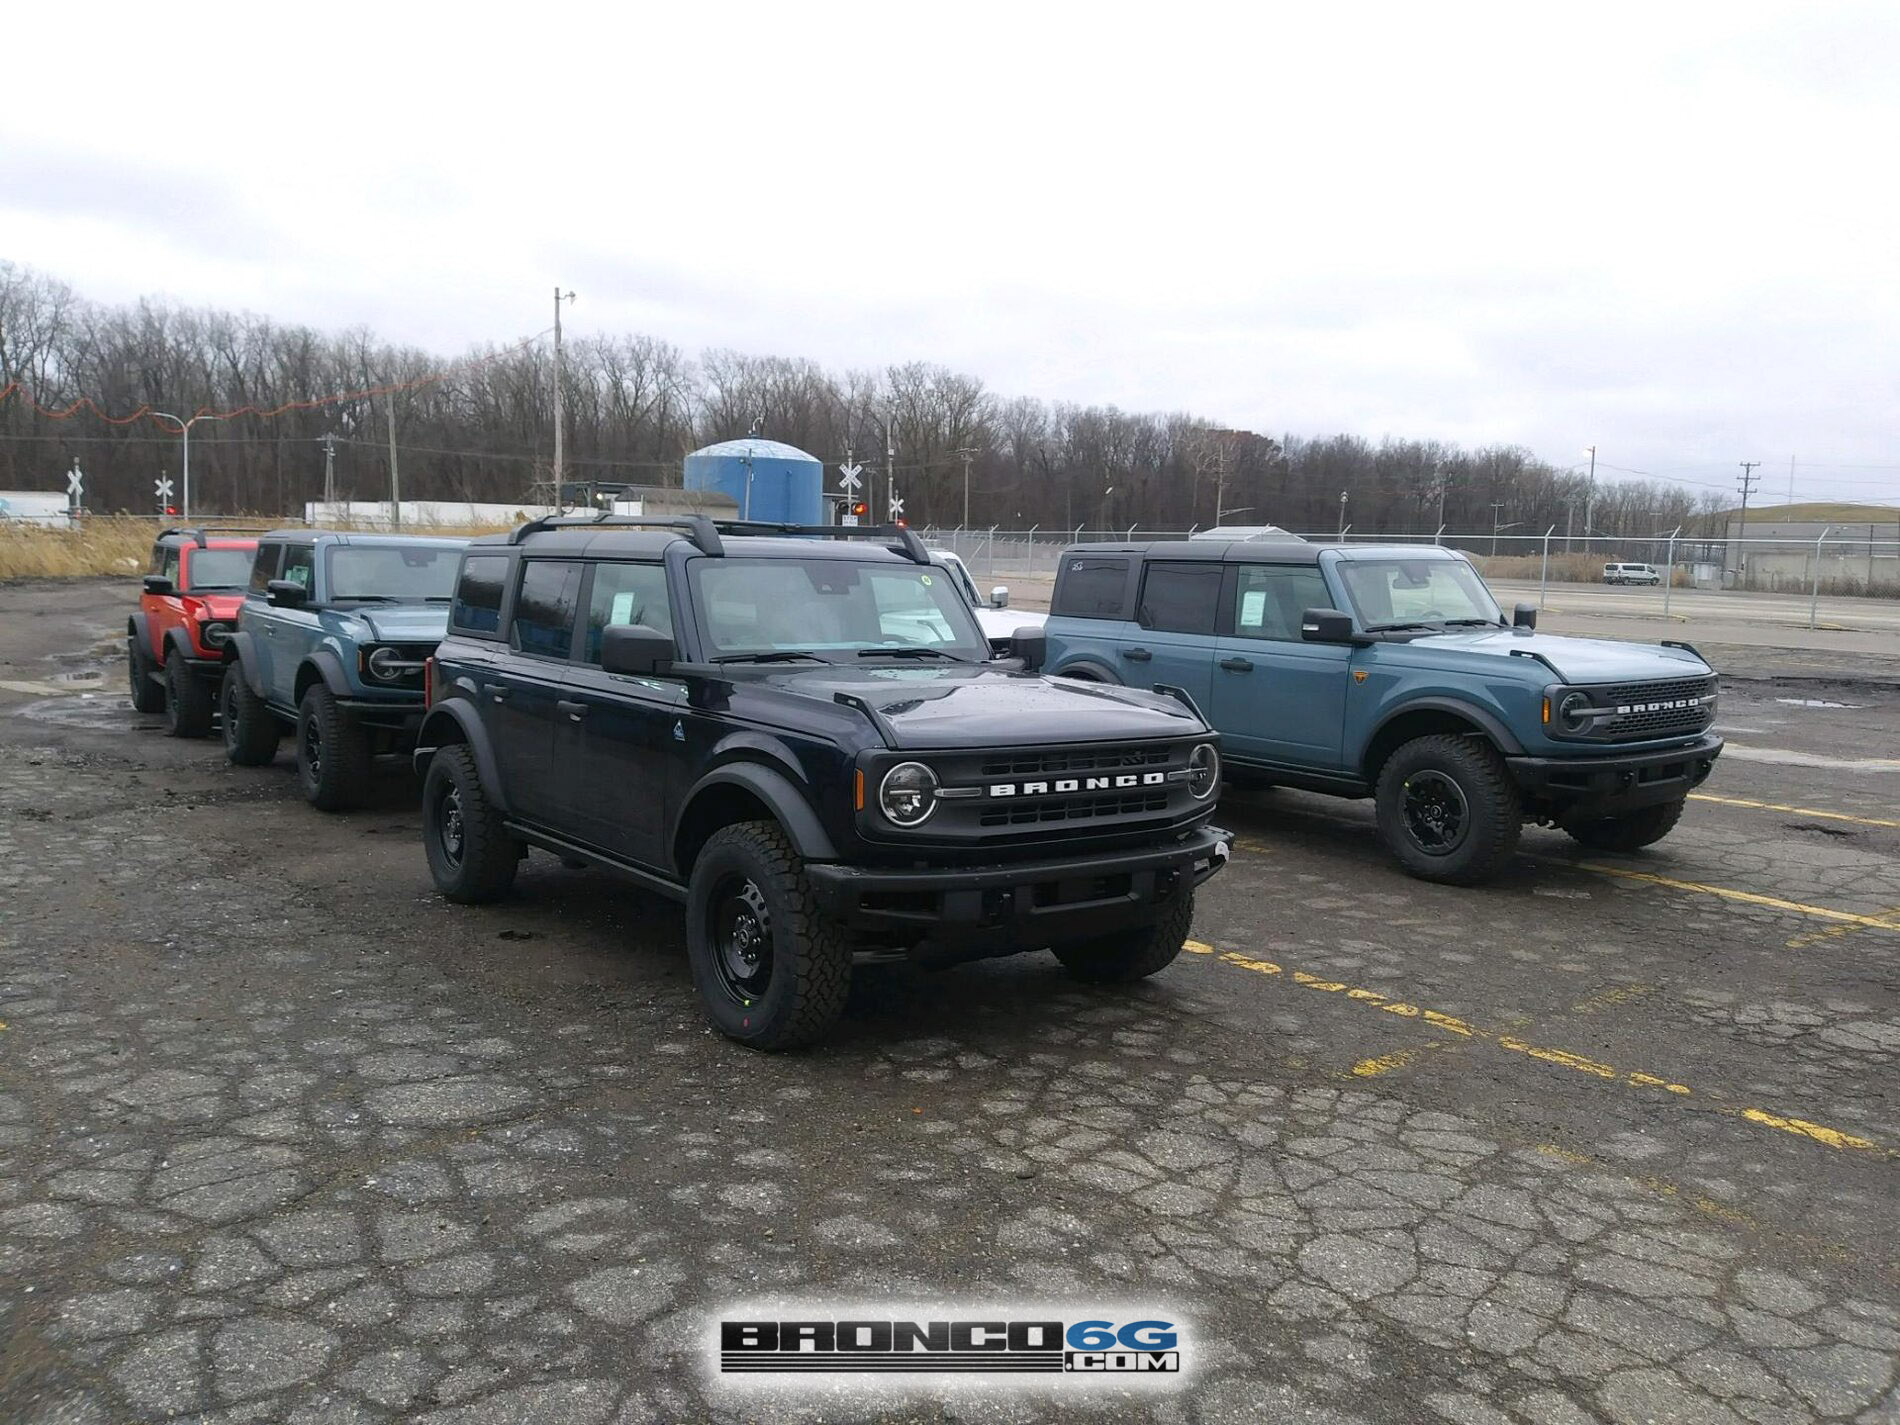 Ford Bronco Ultimate Black Diamond Non-Sasquatch pics thread 05F95A48-1199-4312-9A2D-7EA5A6BC7D93